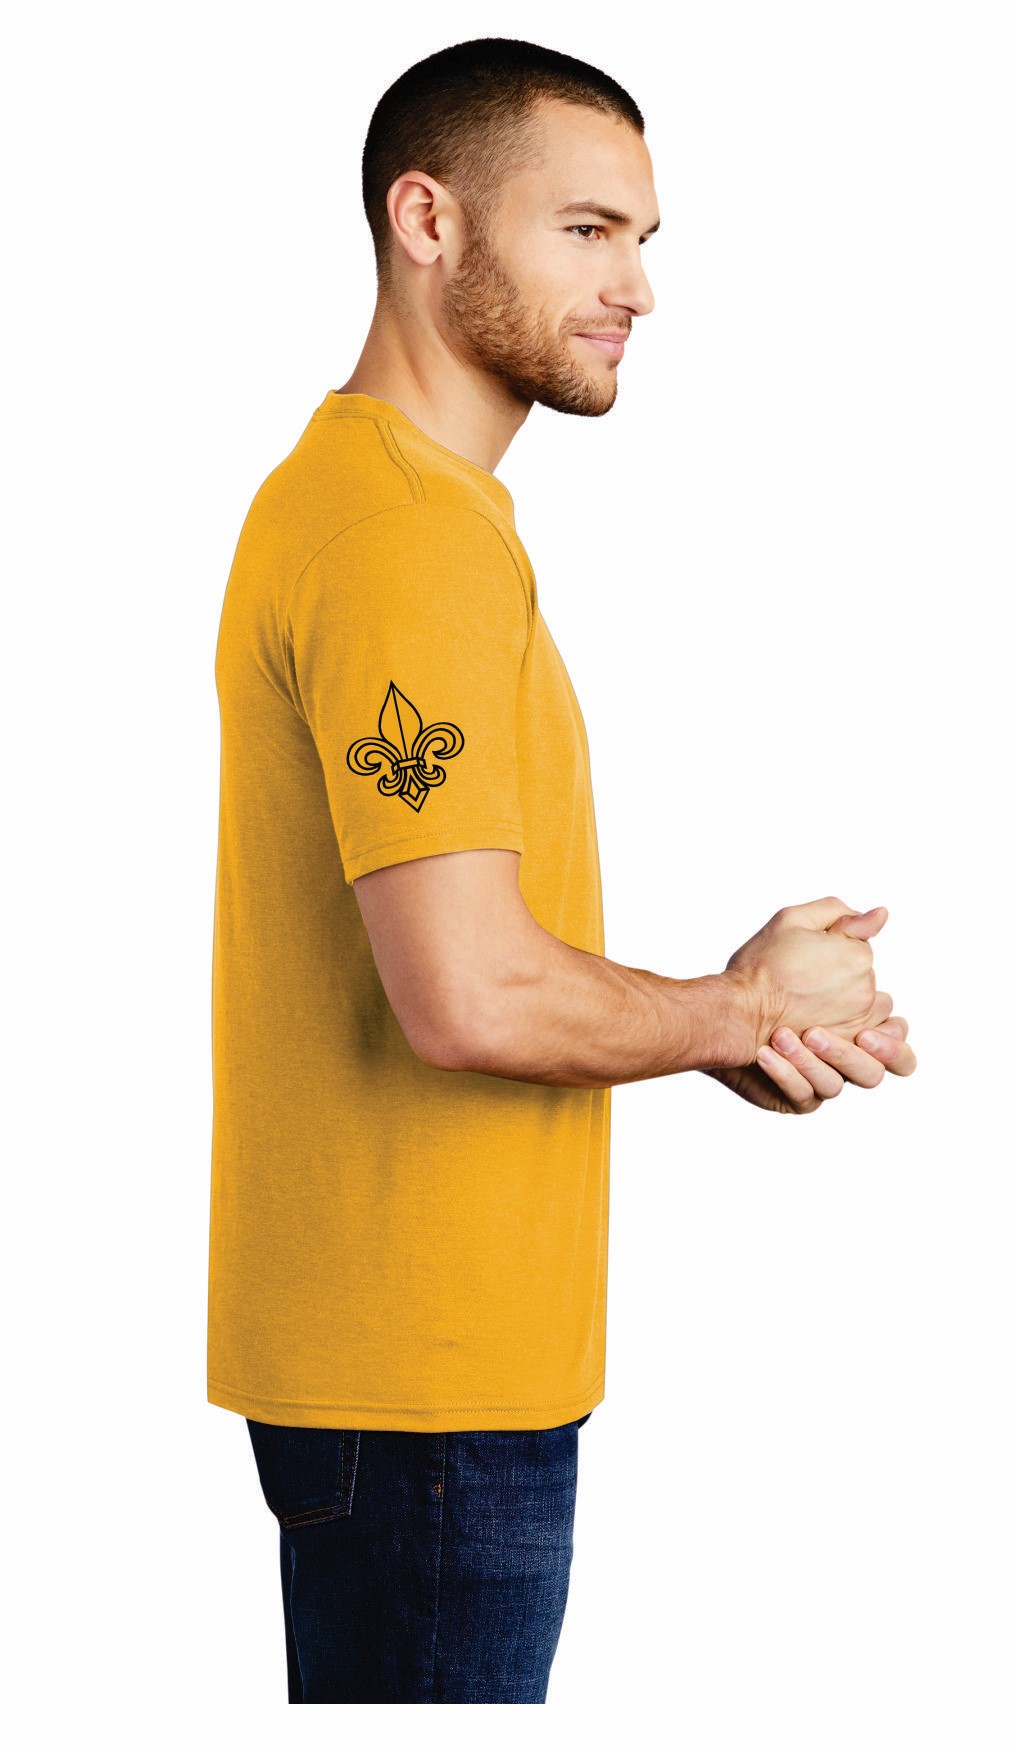 Ochsner Saints Unisex Short Sleeve T-Shirt, Gold, large image number 2